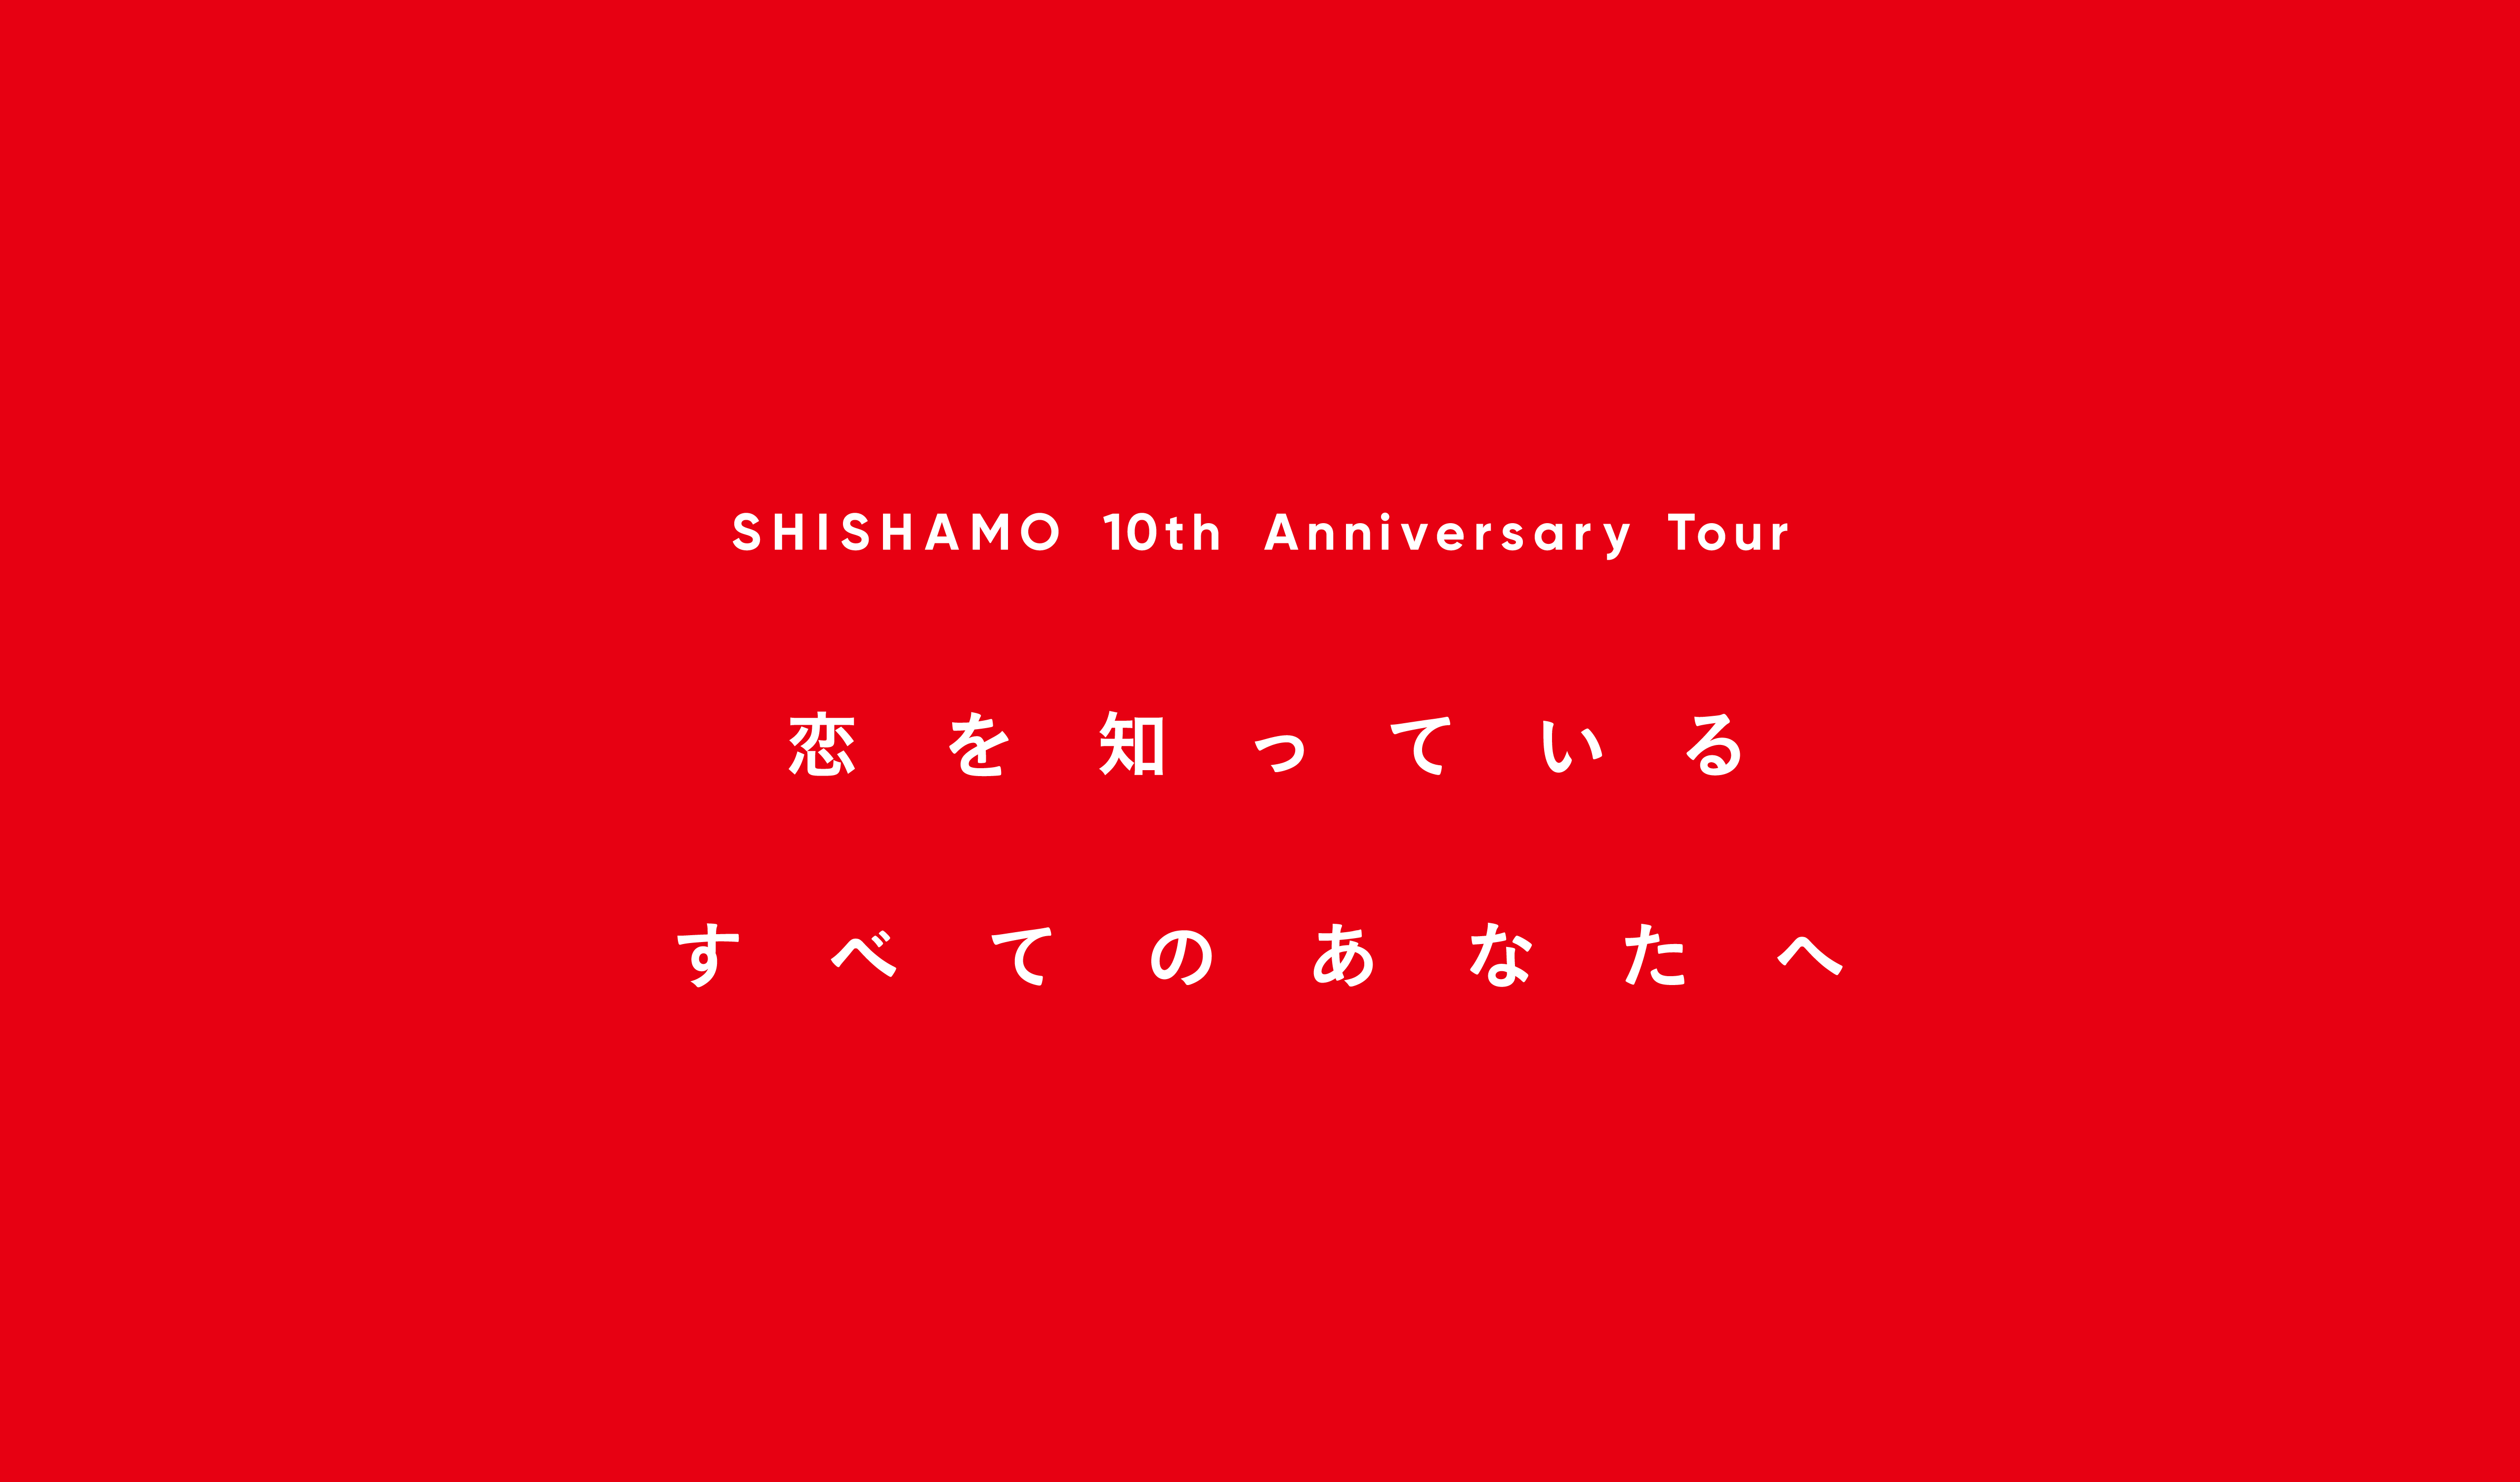 SHISHAMO 10th Anniversary Tour「恋を知っているすべてのあなたへ」 10.07(土) 神戸公演 立見席販売決定!!!｜ SHISHAMO Official Website